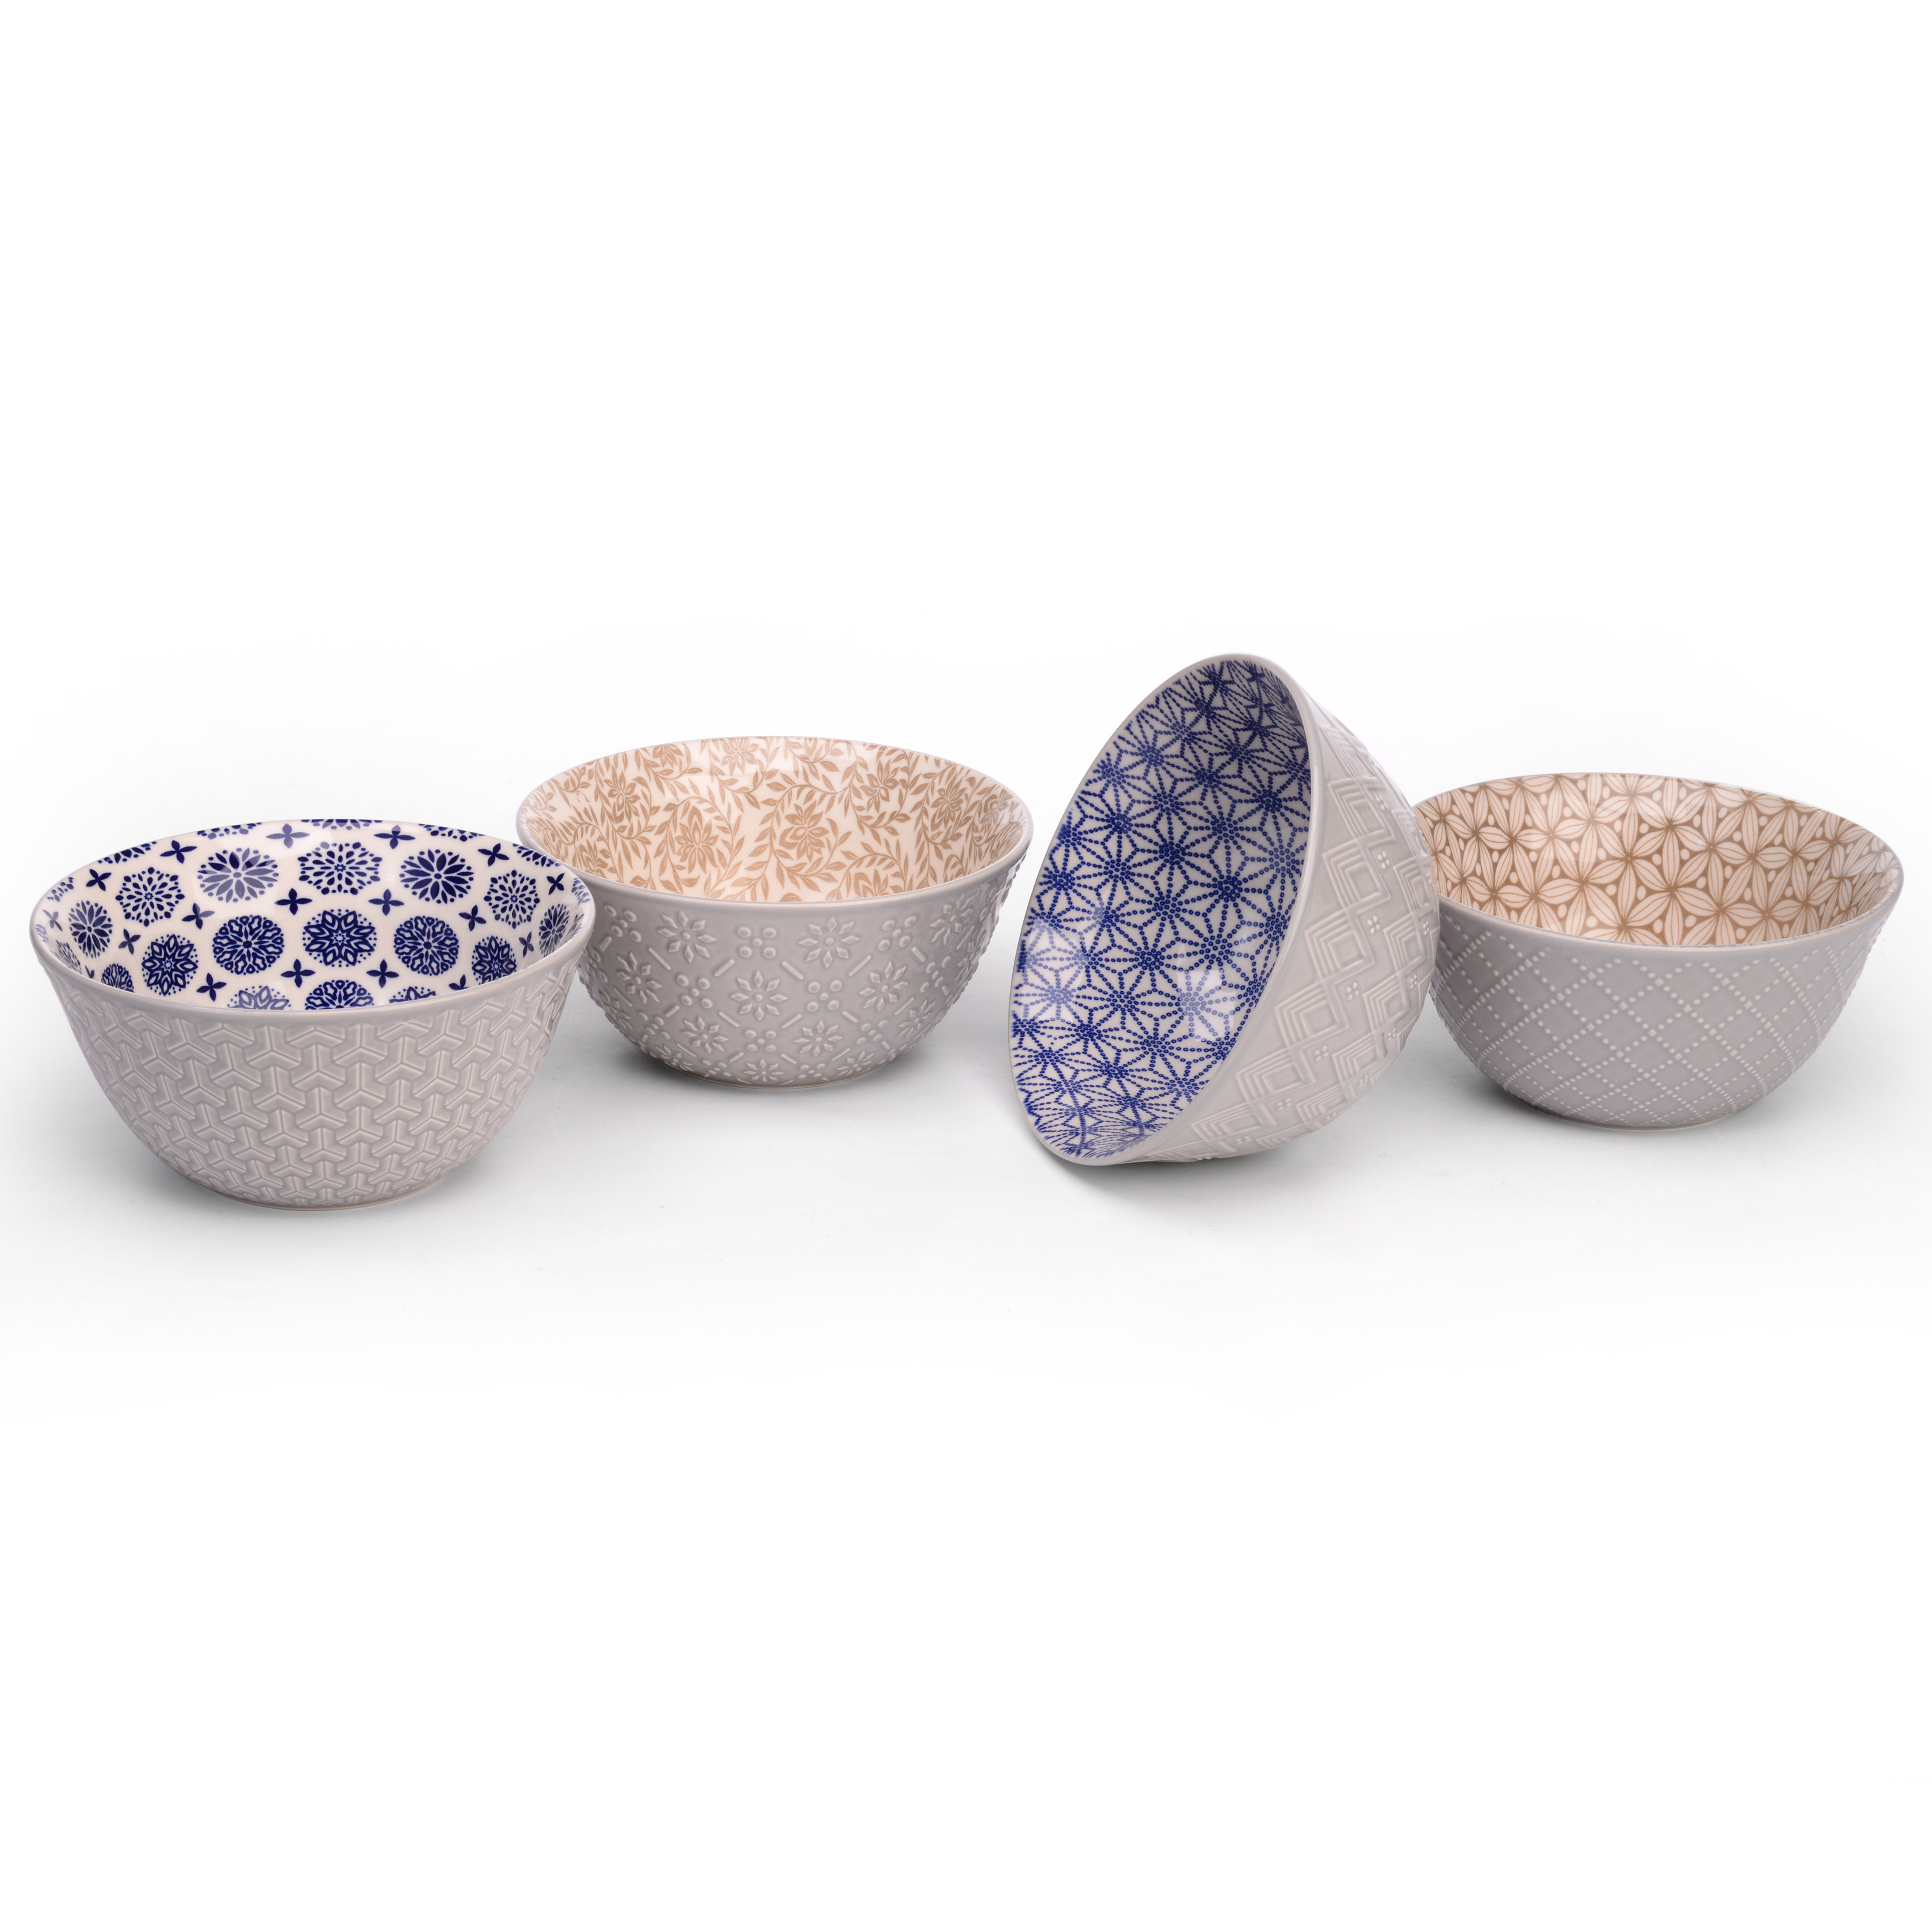 Bruntmor Matte Black Bowls Set Of 6 - 24 Oz Ceramic Serving Plates